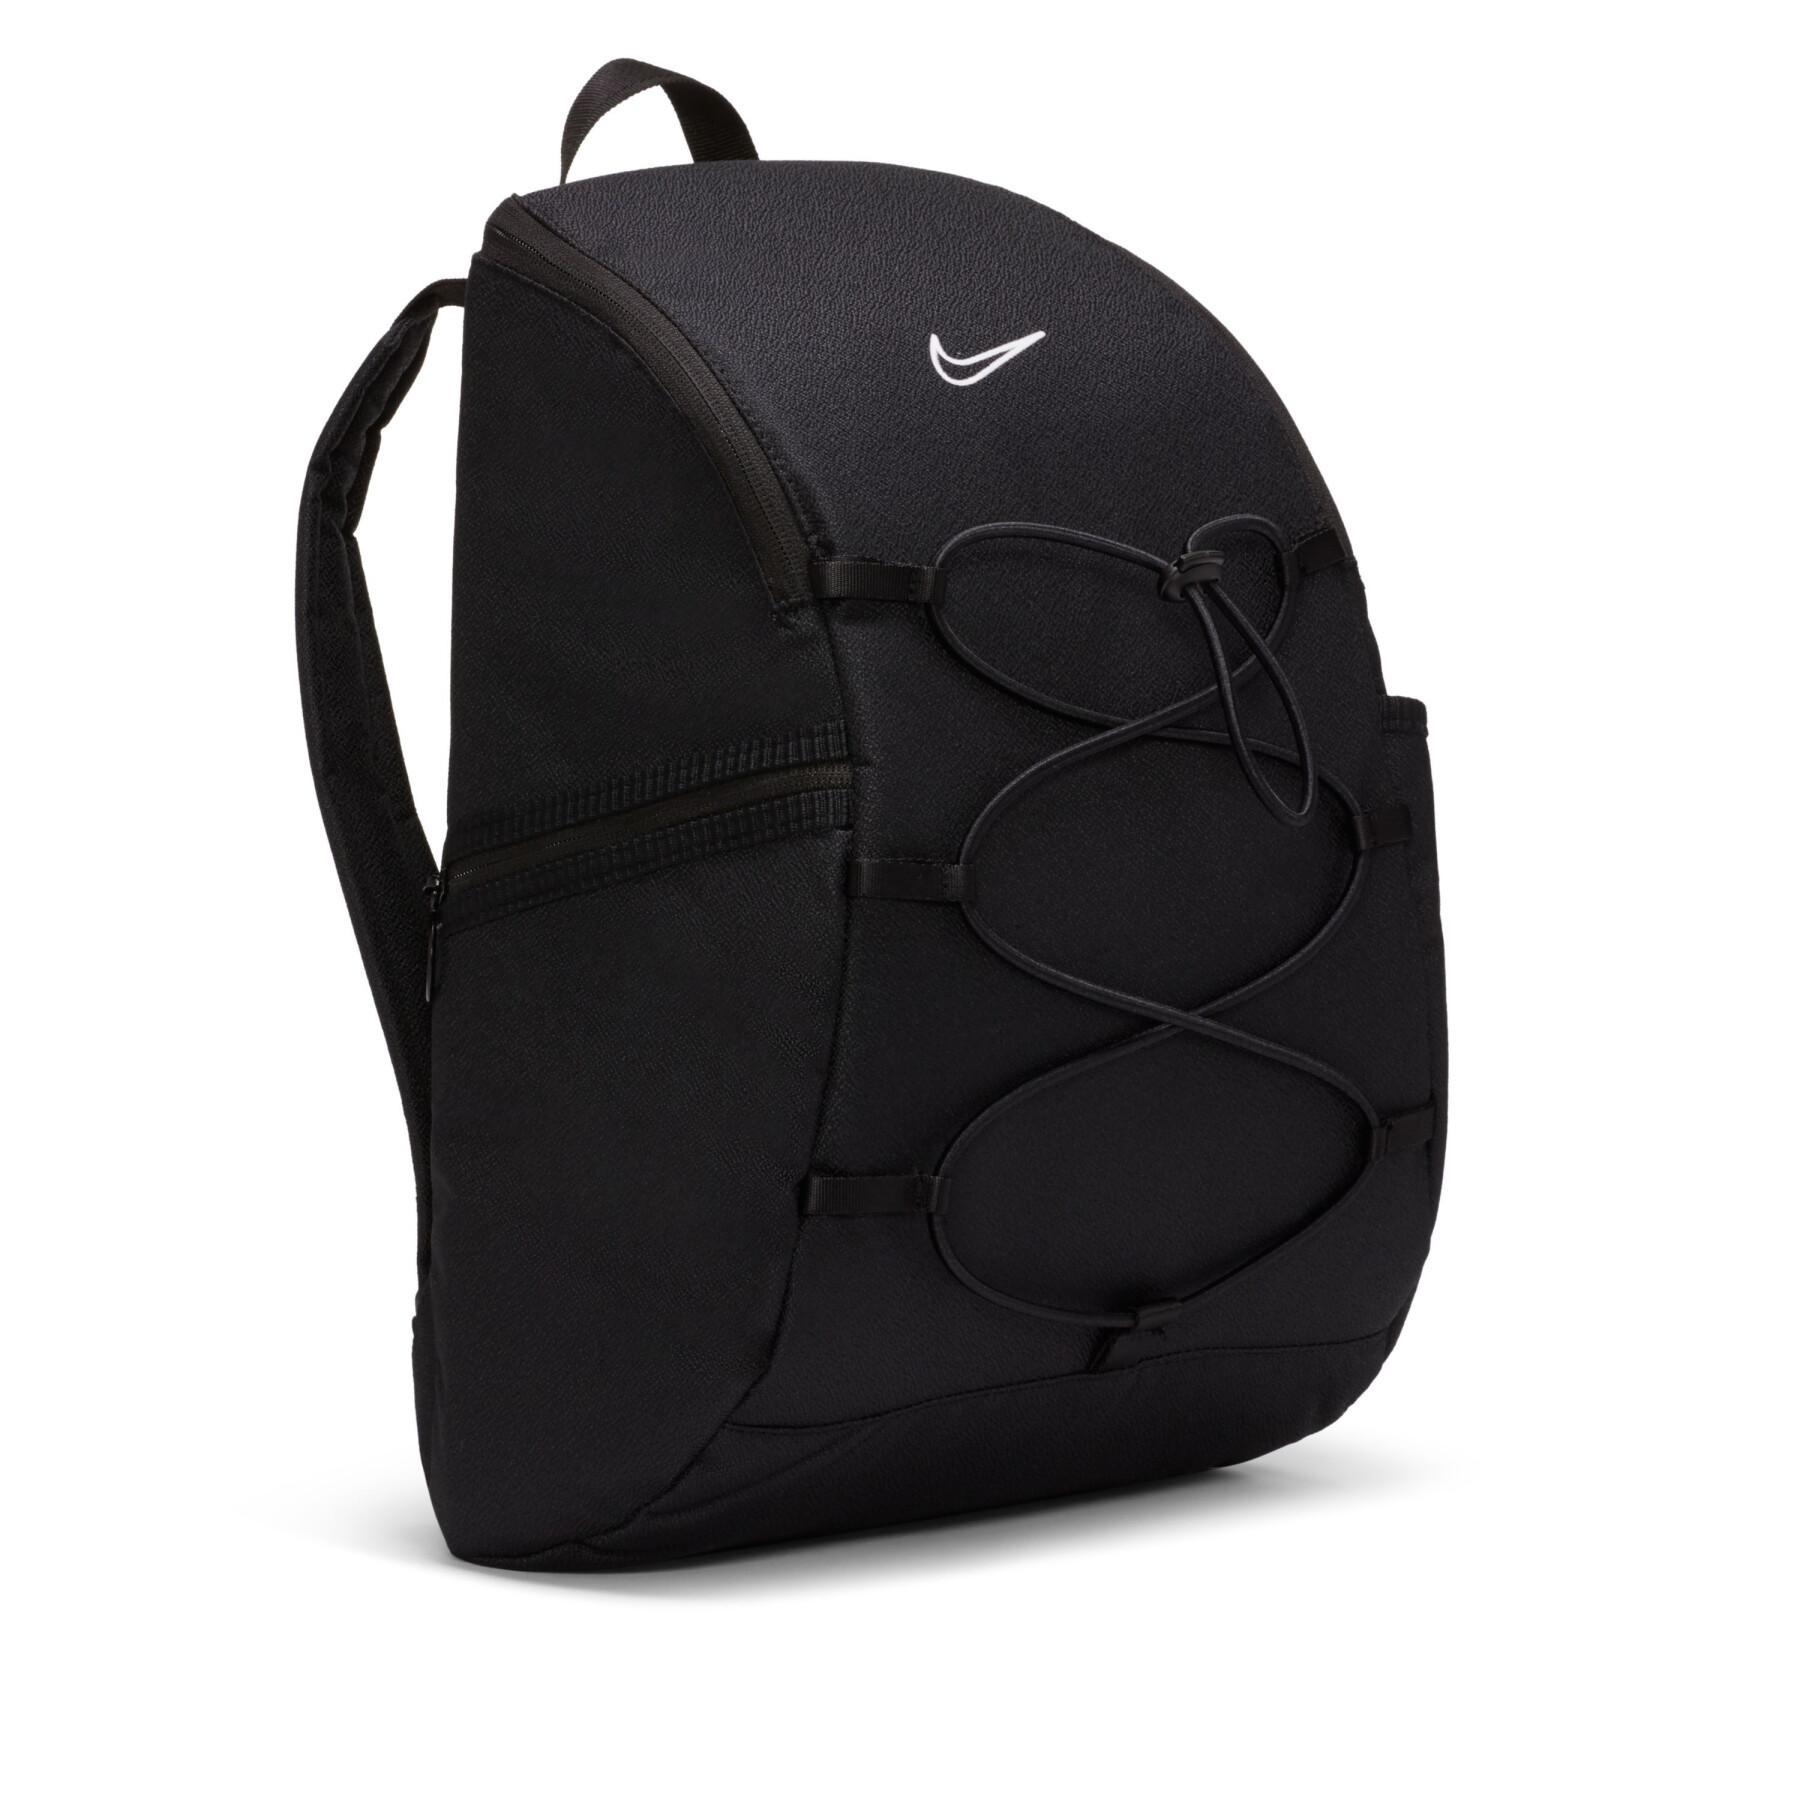 Women's backpack Nike One